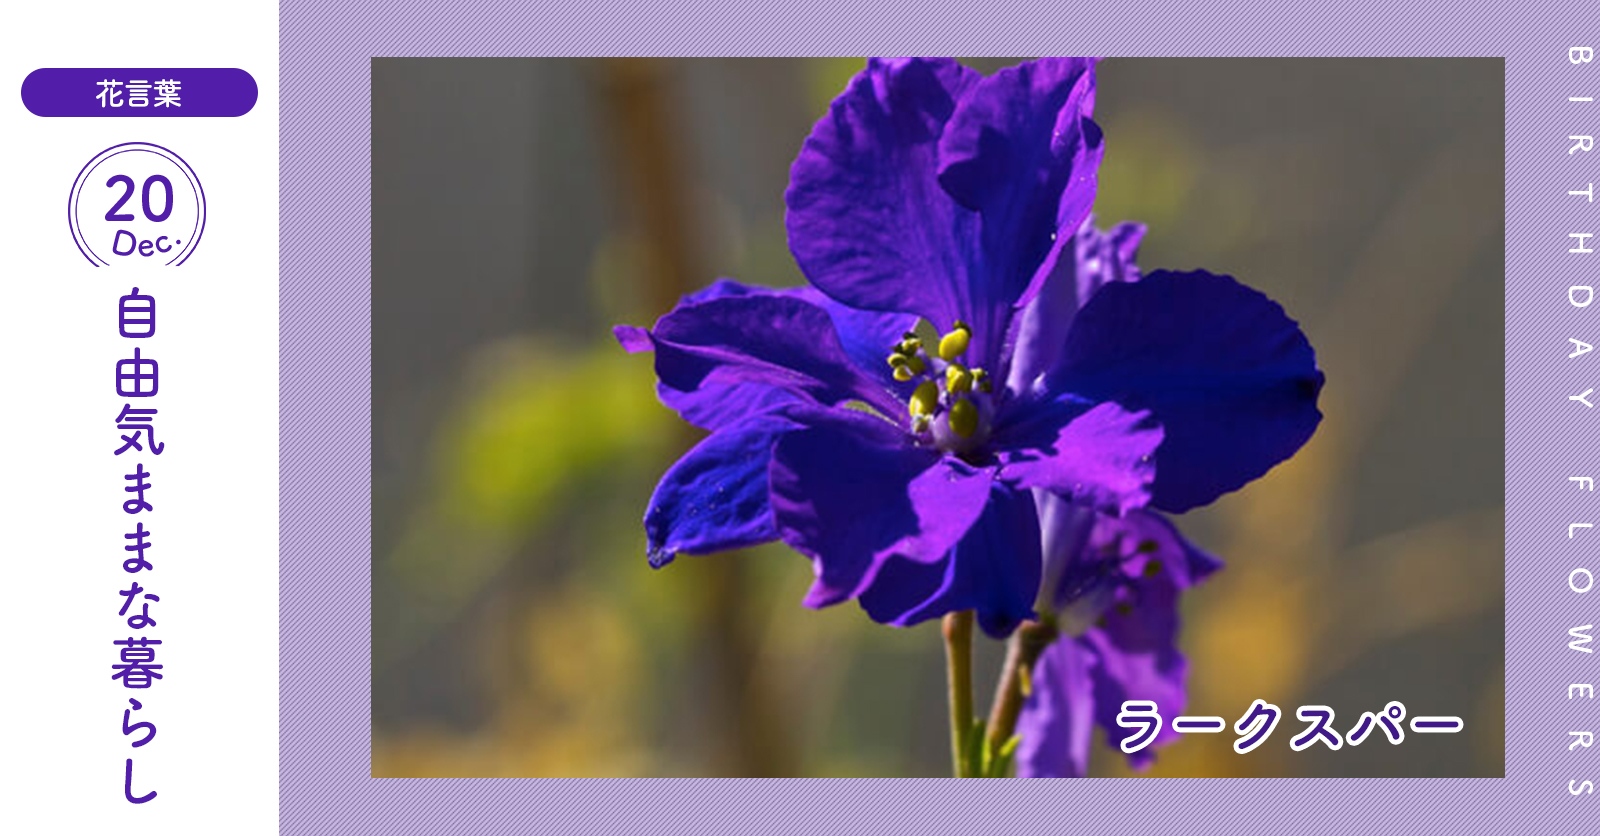 花キューピット I879 Com 公式 キャンペーン実施中 12月日の誕生花 ラークスパー お誕生日おめでとう 花言葉 は 自由気ままな暮らし 青 紫 赤 白などの花をつける植物です あなたはこんな人 好き嫌いがはっきりしている 同じ誕生日の